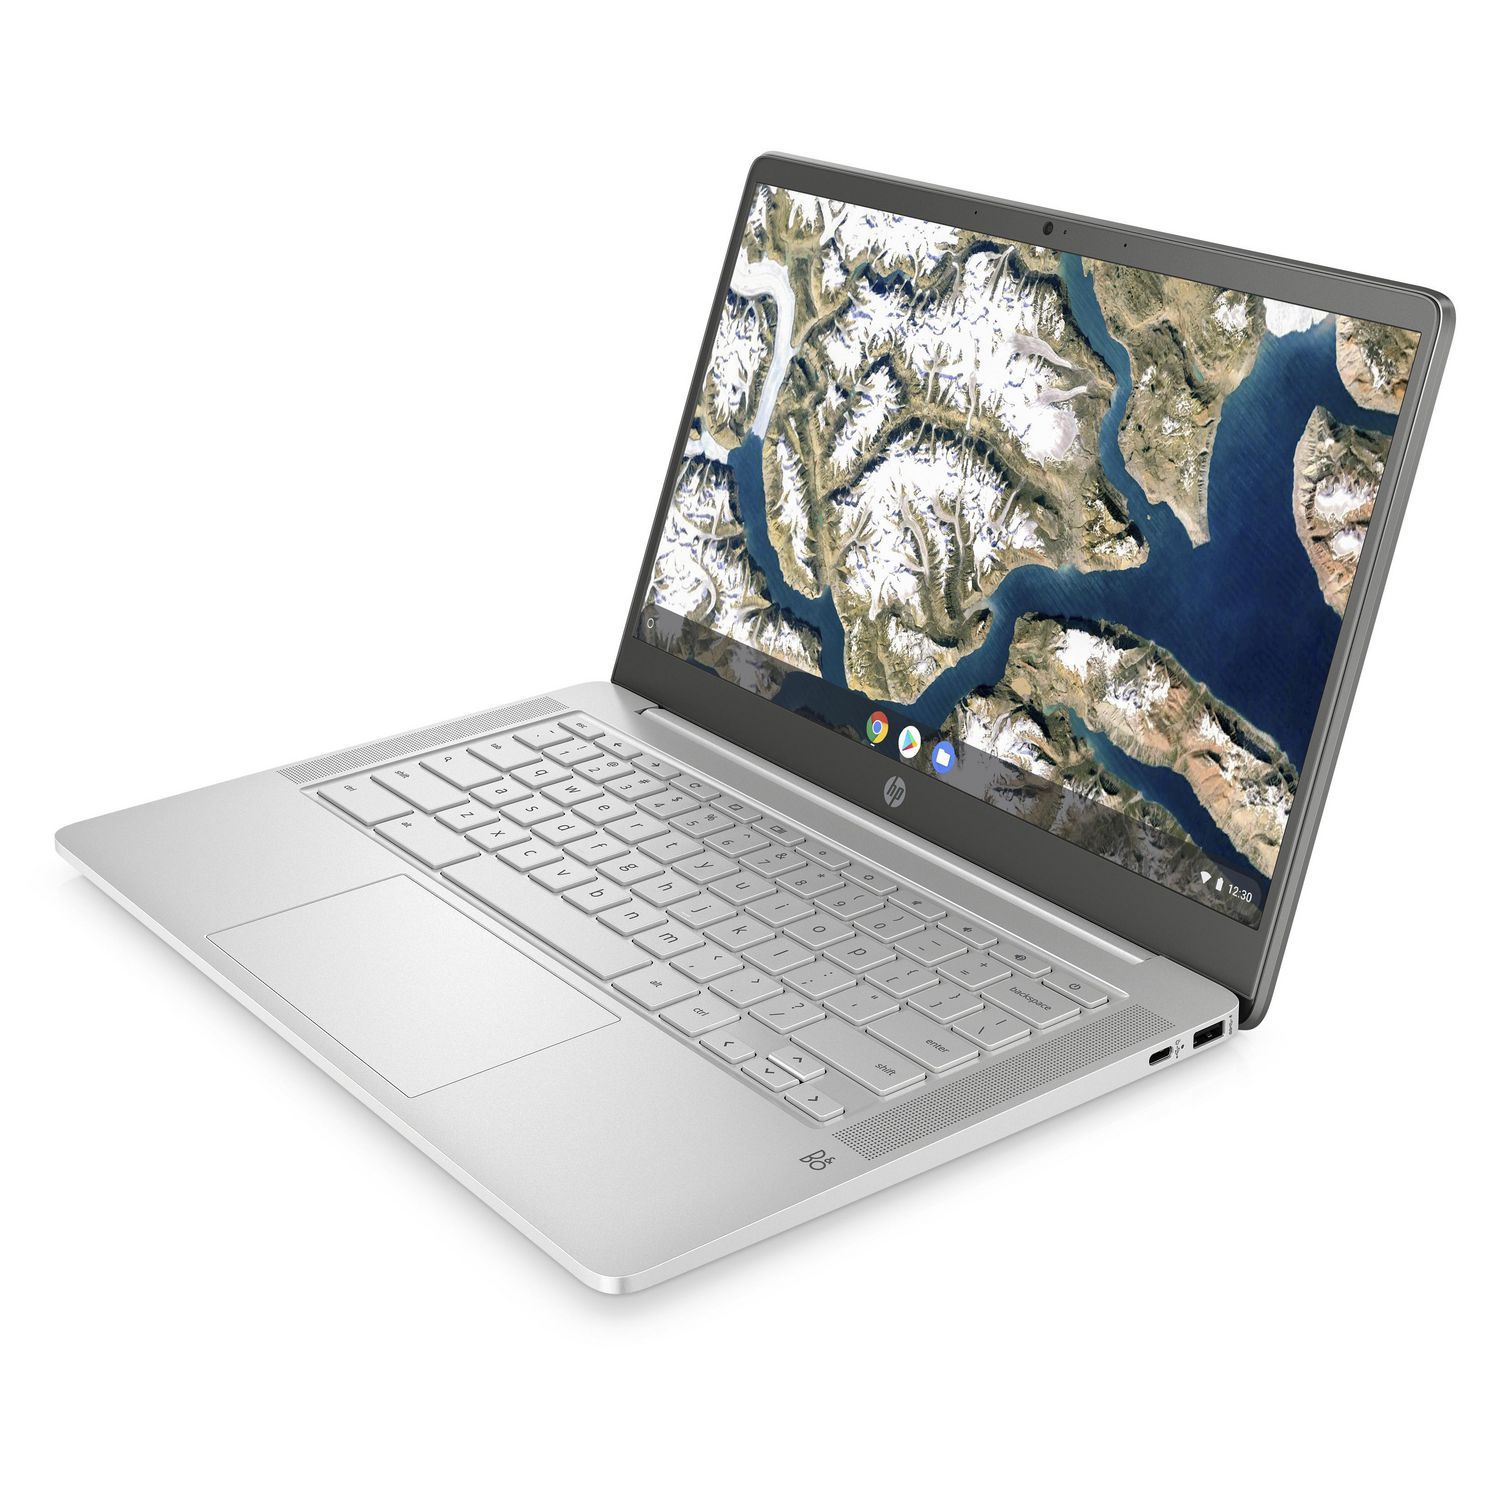 Refurbished (Good) - HP Chromebook 14a-na0010ca 14" Laptop, Intel Celeron N4000, 4GB RAM, 64GB eMMC, Mineral Silver